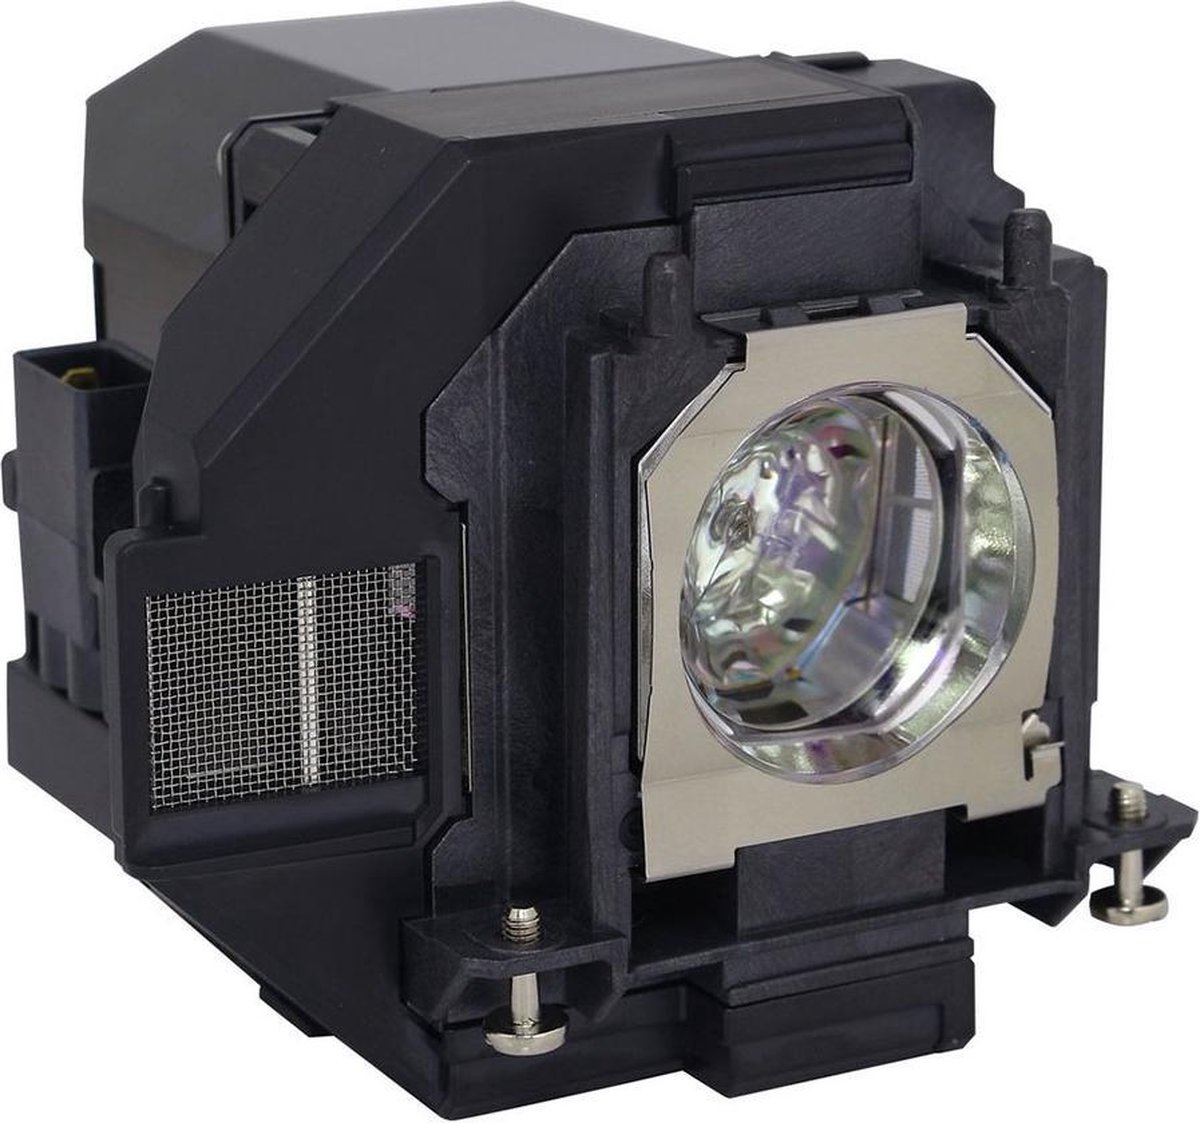 Beamerlamp geschikt voor de EPSON H866A beamer, lamp code LP96 / V13H010L96. Bevat originele UHP lamp, prestaties gelijk aan origineel.